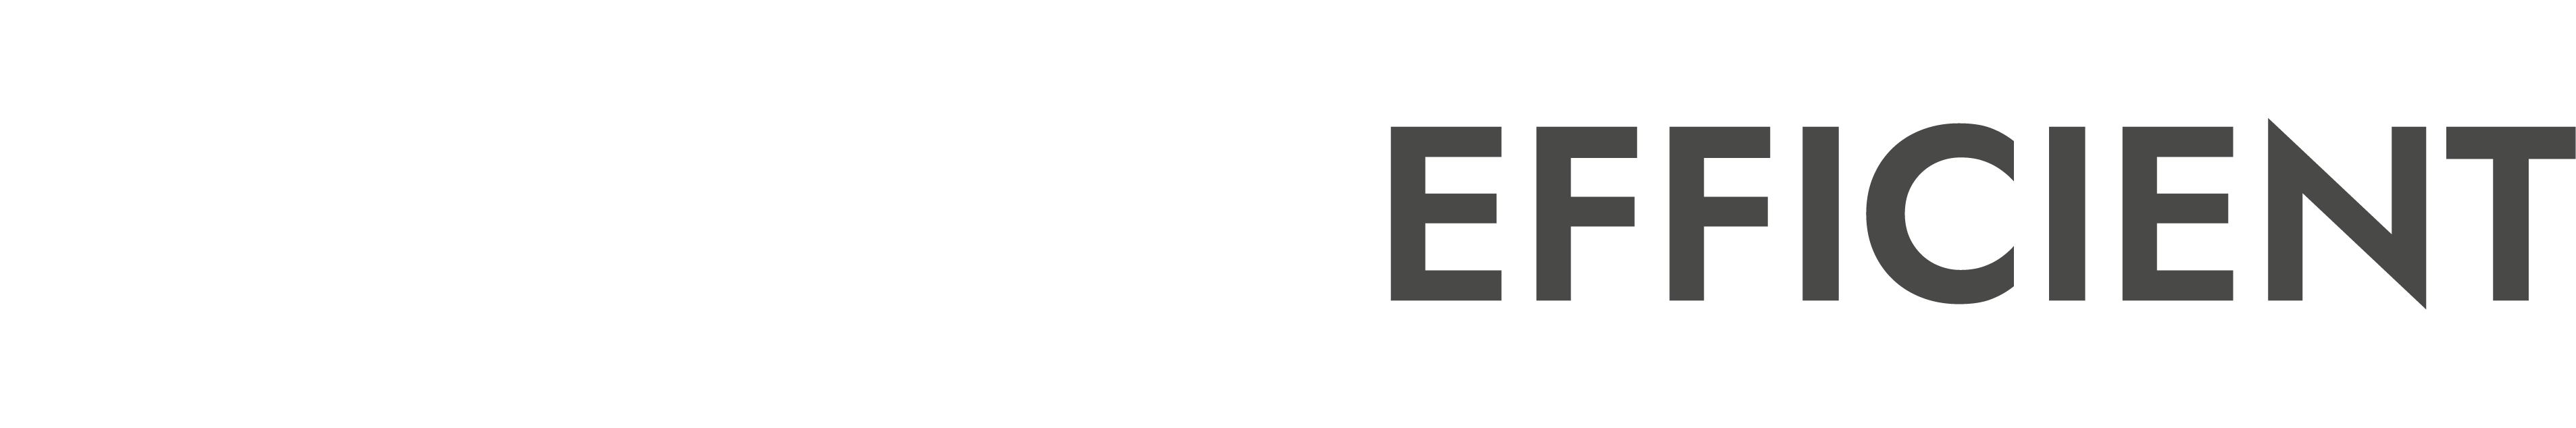 OfficeEfficient Logo